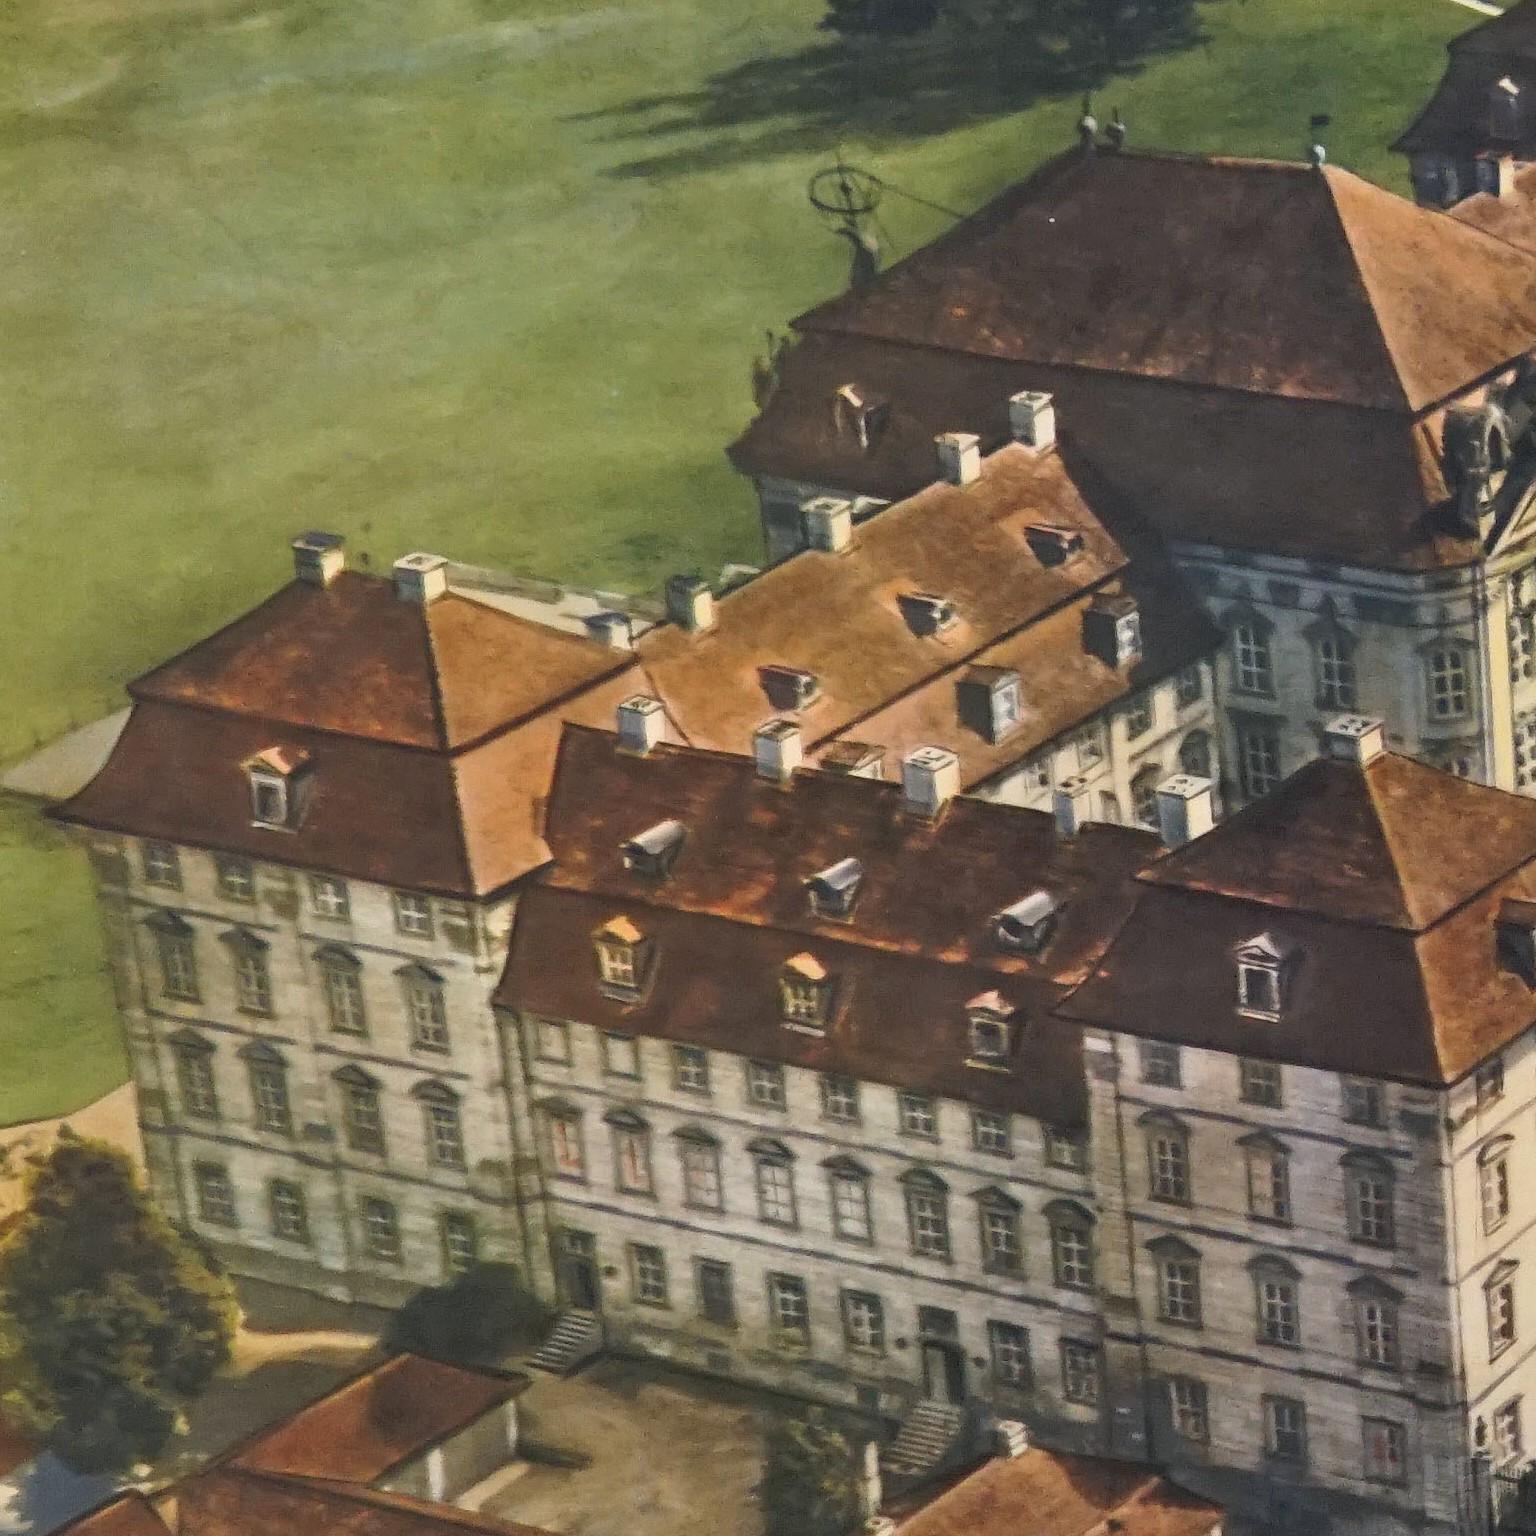 Die Vintage-Wandtafel zeigt ein imposantes fürstliches Schloss aus dem 18. Jahrhundert. Herausgegeben von der Neuen Schulmann, Stuttgart. Farbenfroher Druck auf mit Leinwand verstärktem Papier.
Abmessungen:
Breite 90 cm (35,43 Zoll)
Höhe 64 cm